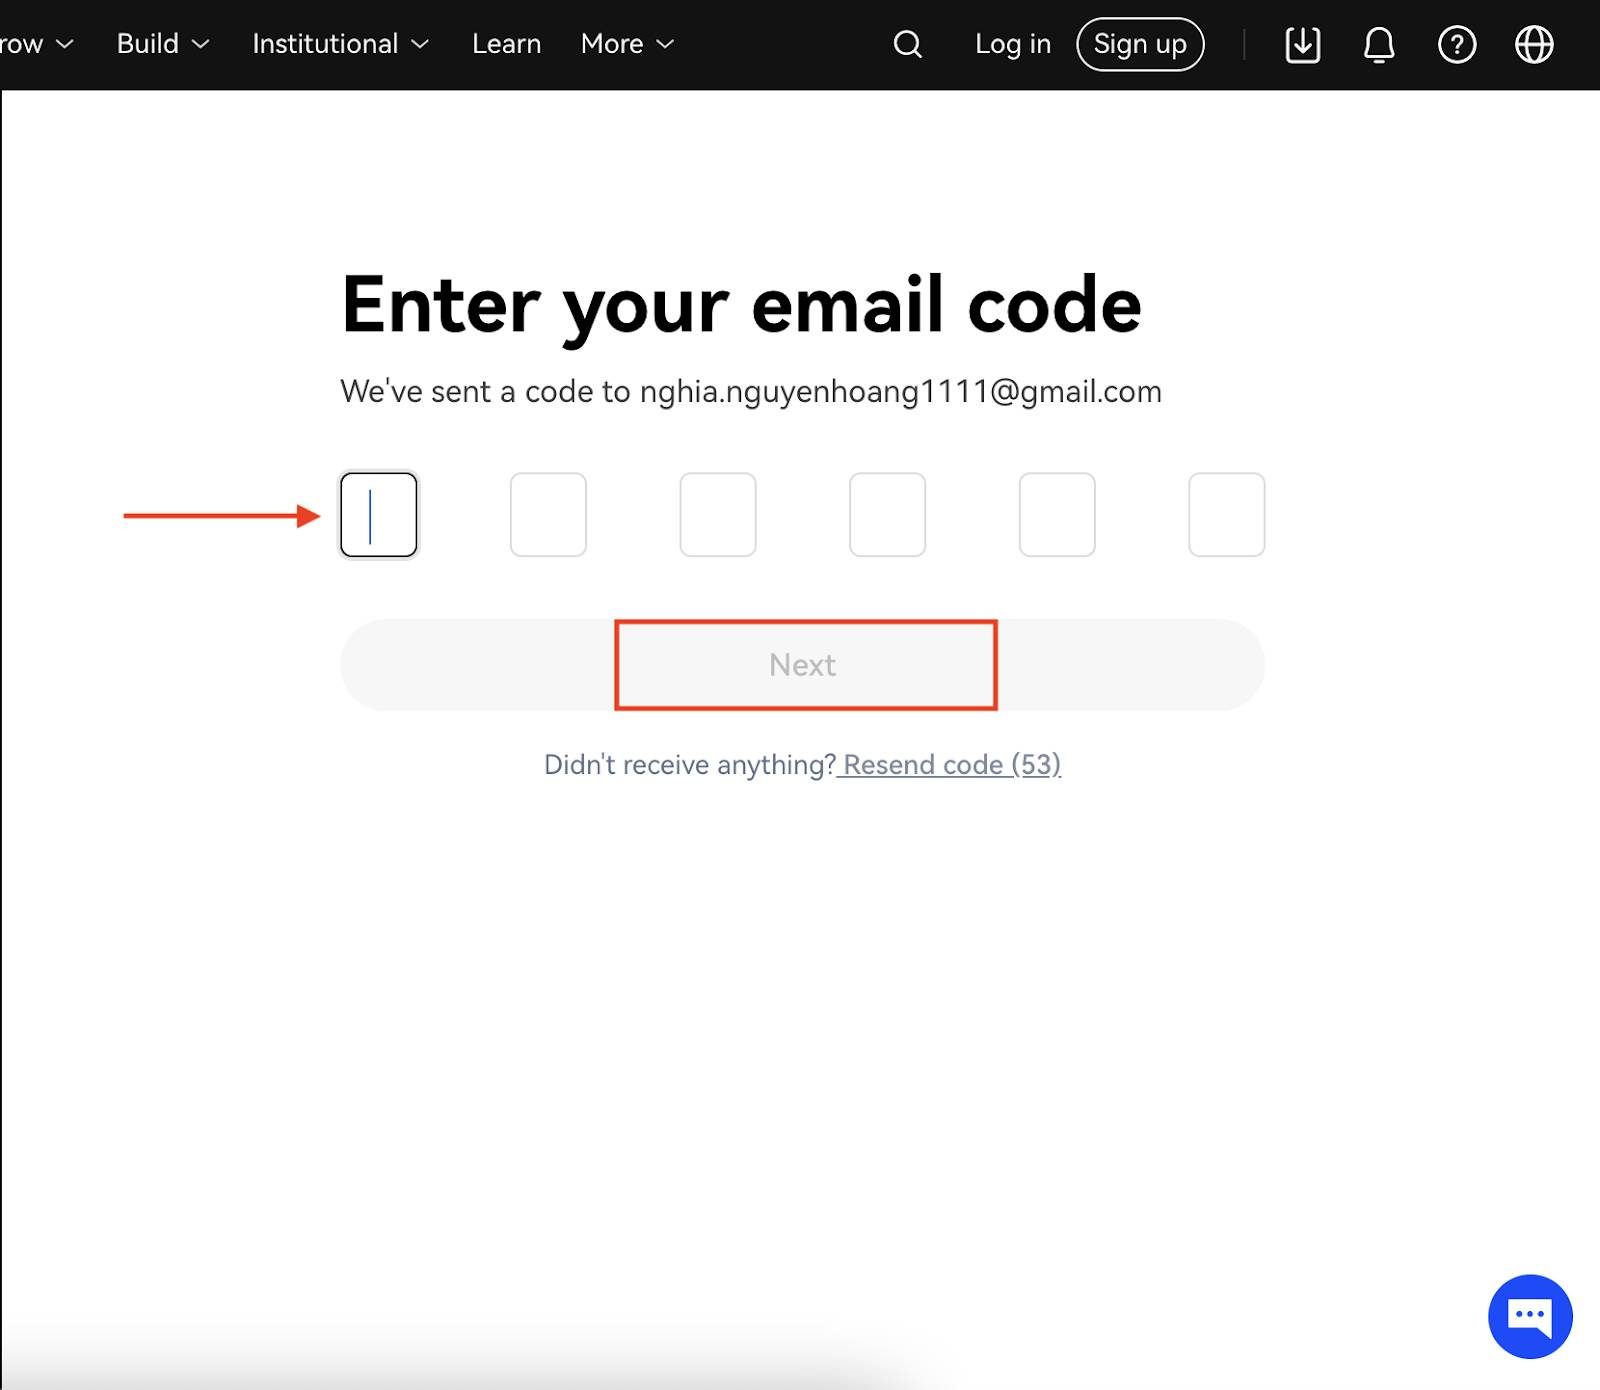 Bước 3: Nhập mã xác thực được gửi đến email của bạn và chọn “Next”.